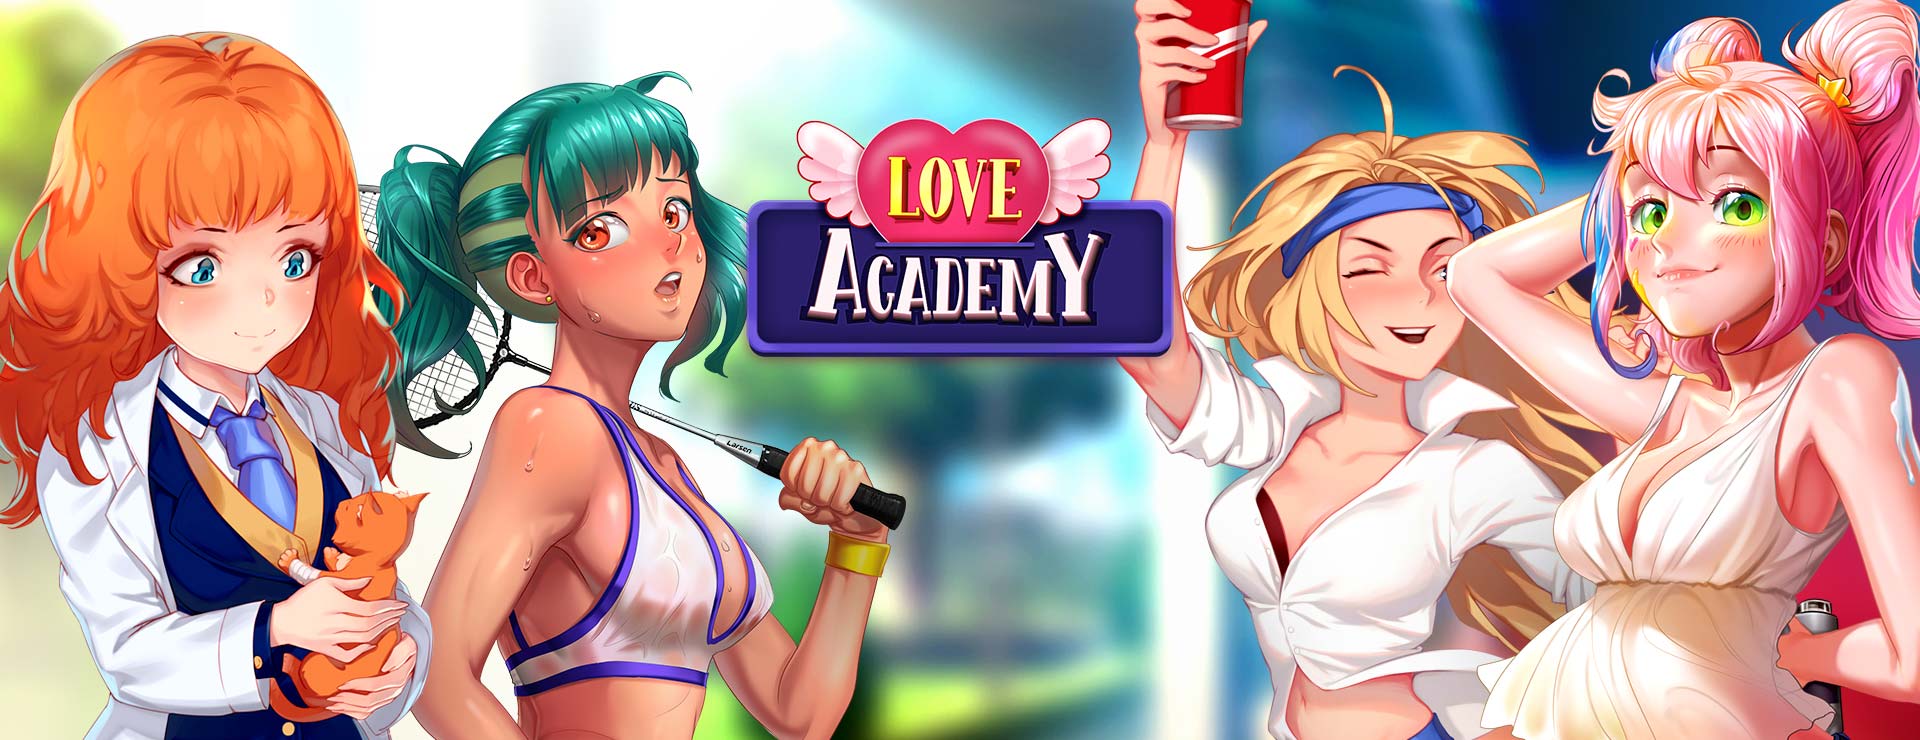 Love Academy - Zwanglos  Spiel